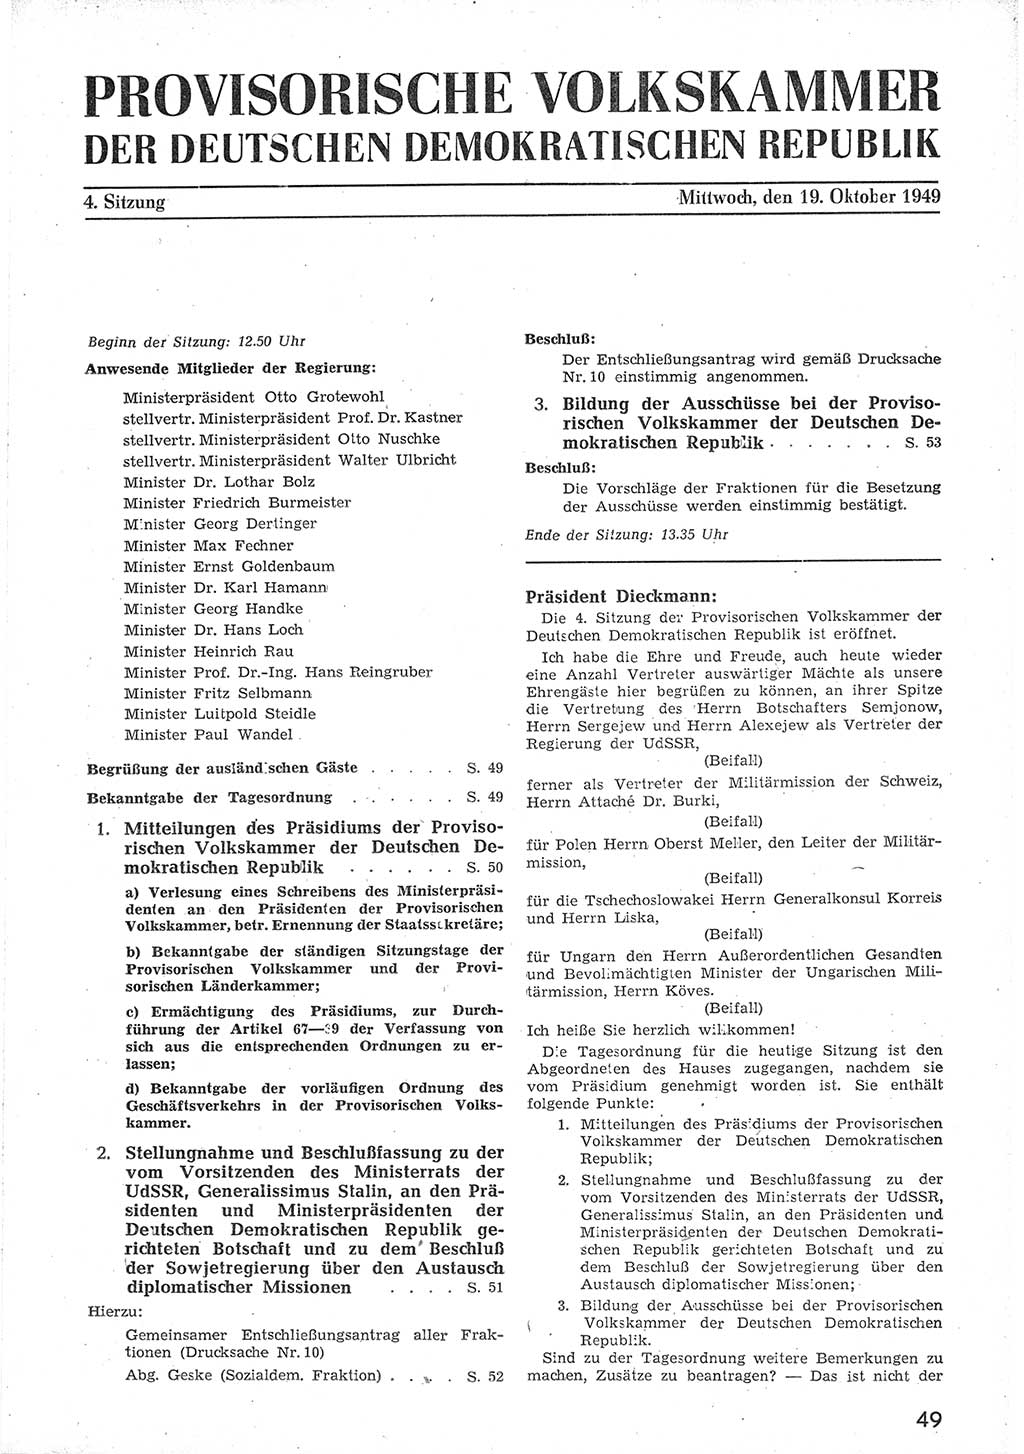 Provisorische Volkskammer (VK) der Deutschen Demokratischen Republik (DDR) 1949-1950, Dokument 61 (Prov. VK DDR 1949-1950, Dok. 61)